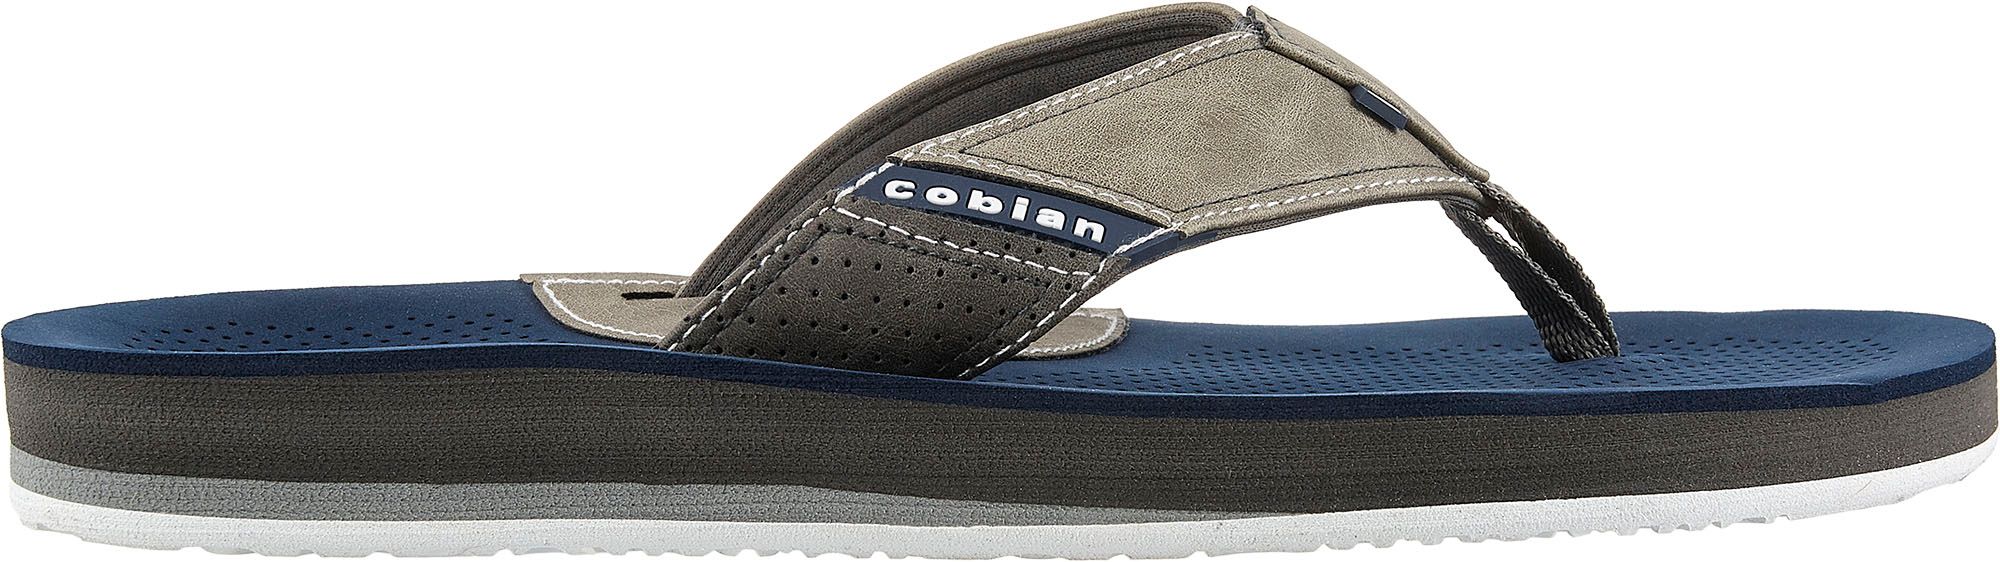 cobian arv2 sandals